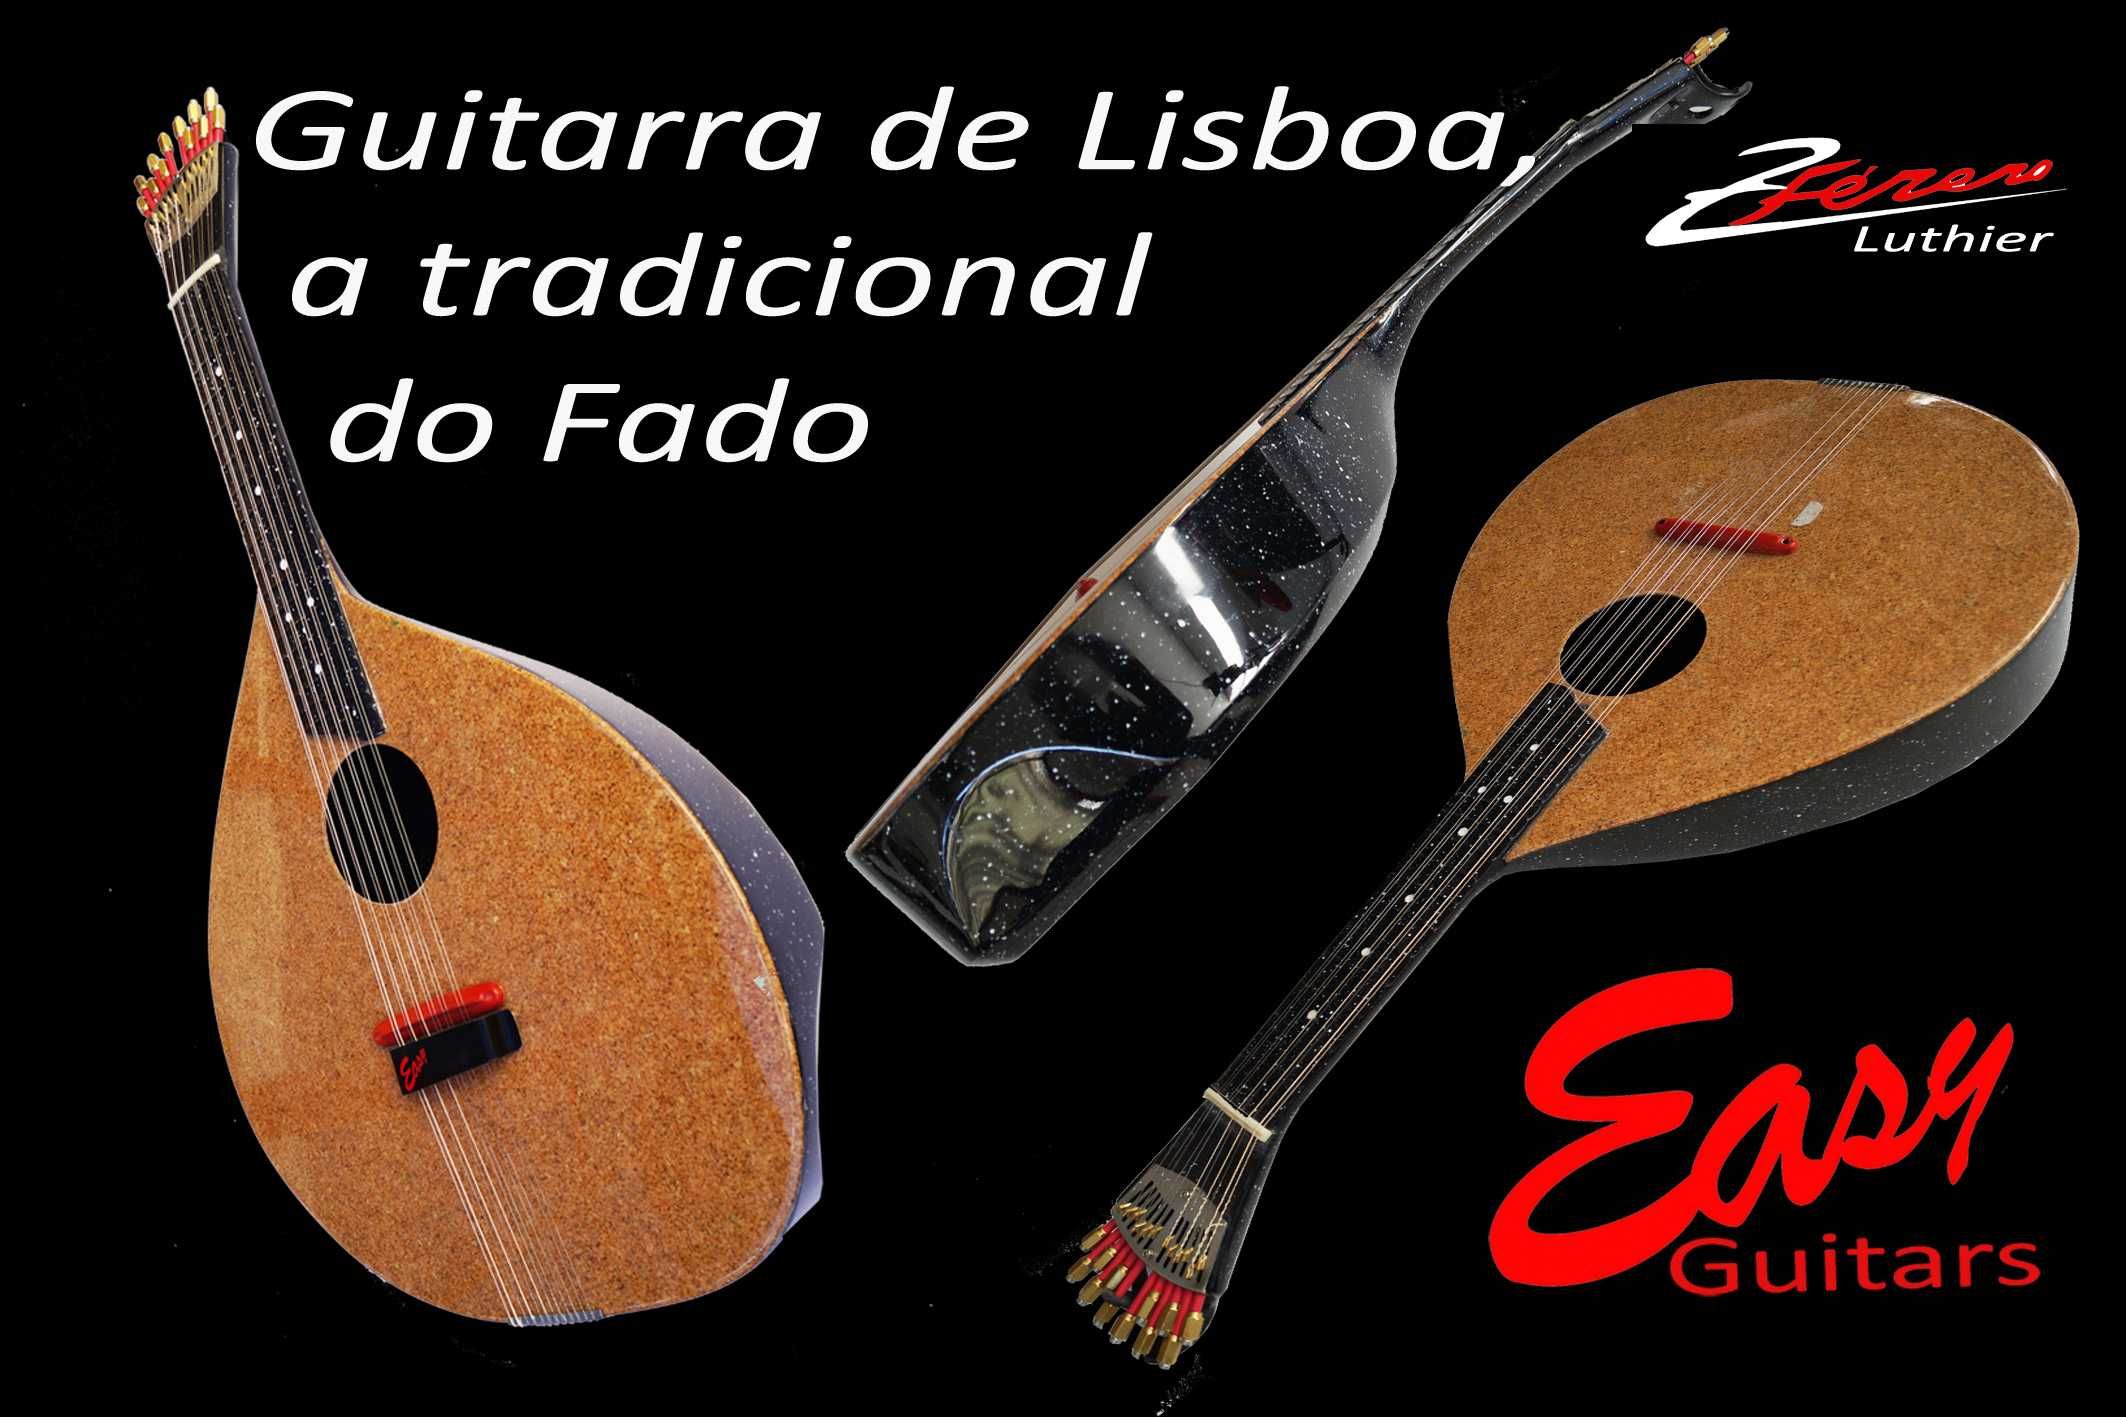 Violas e Guitarras Portuguesas em ECO-COMPÓSITO